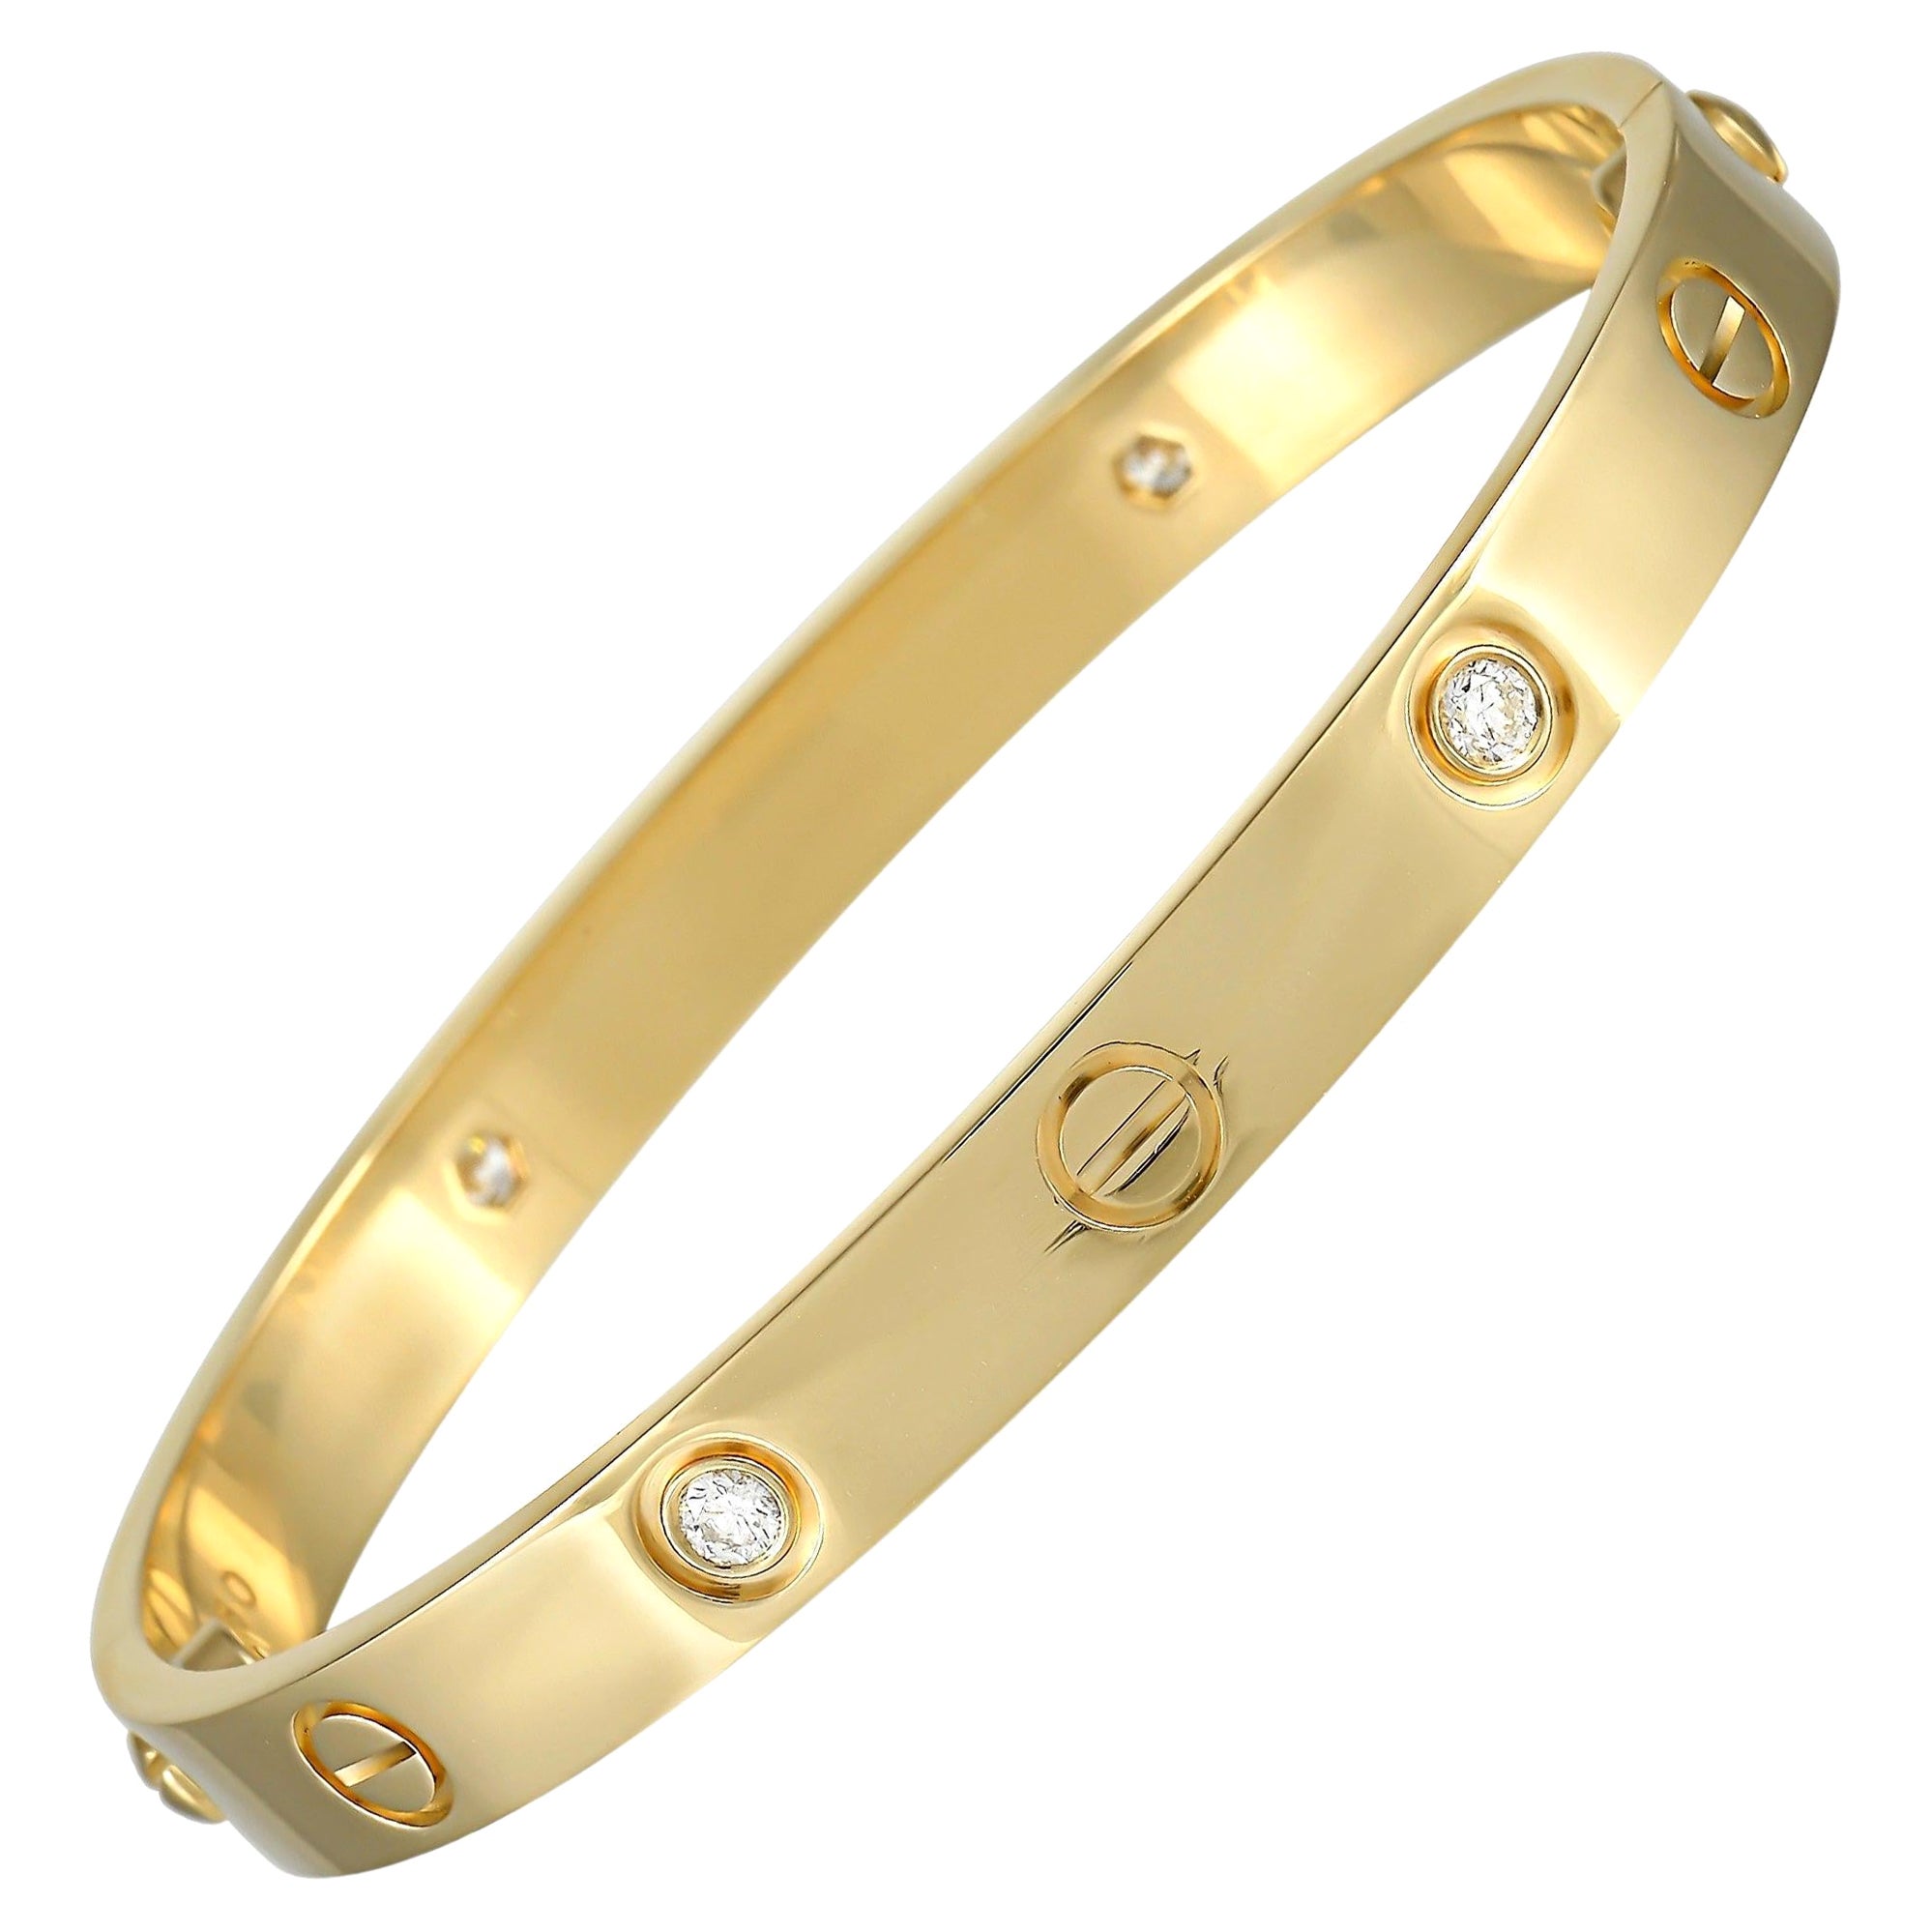 Diamond Jaguar Bracelet by Vahan - Stunning and Celeb Fav!